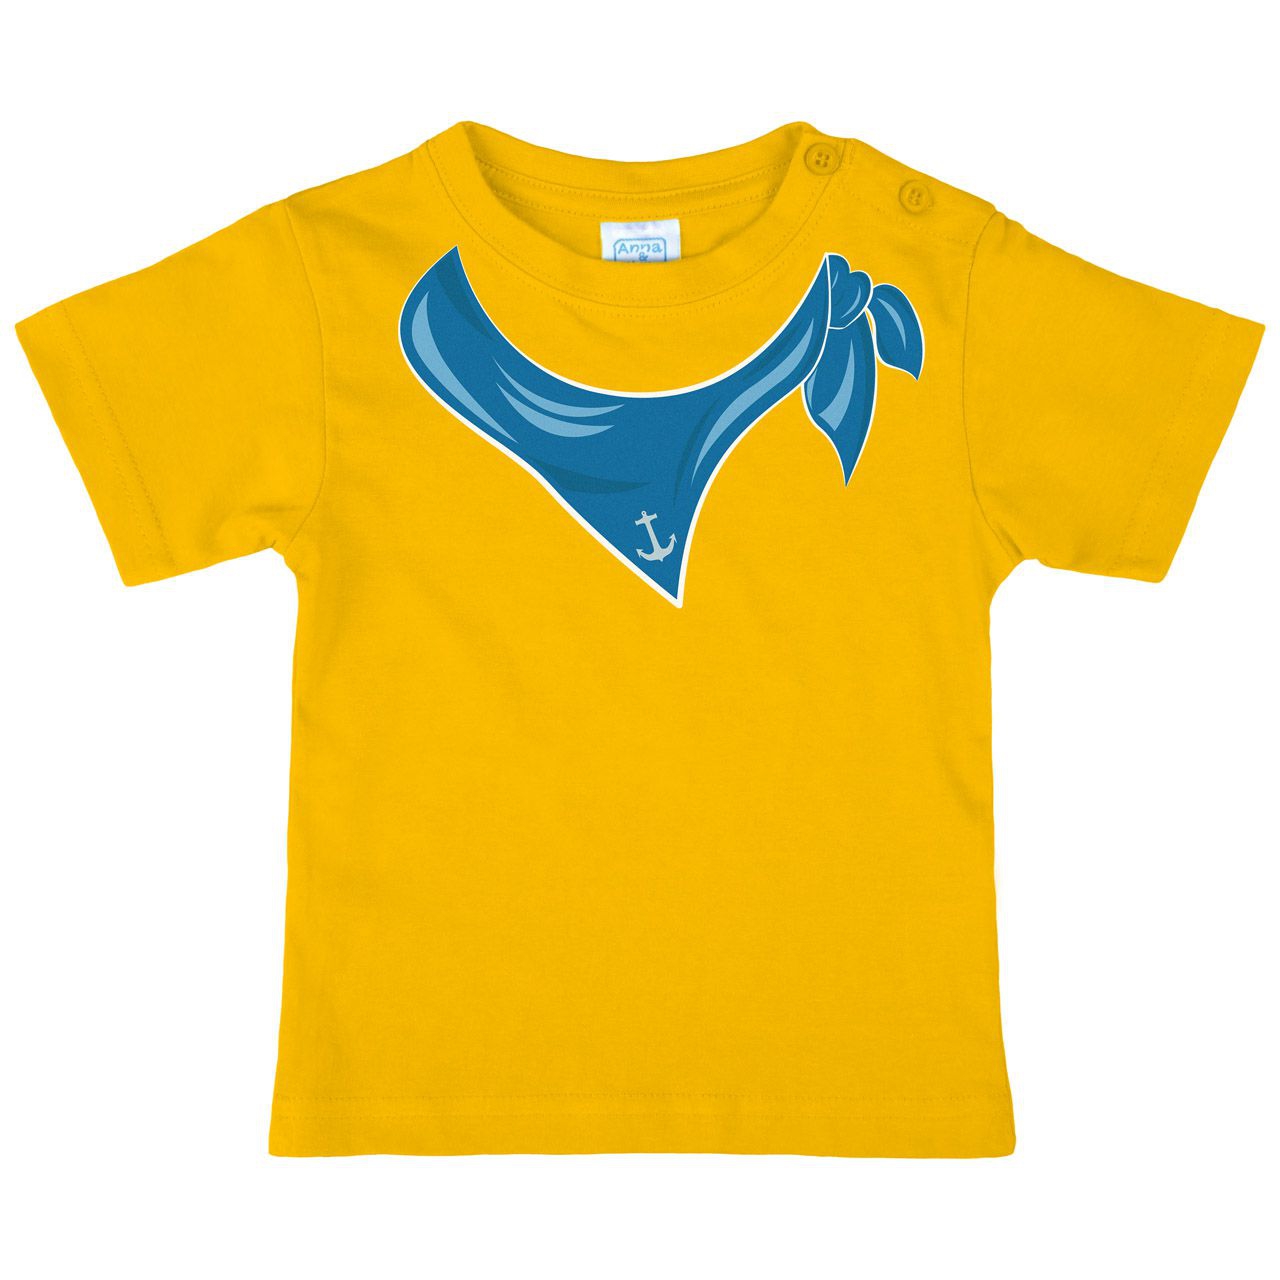 Halstuch Anker Junge Kinder T-Shirt gelb 68 / 74